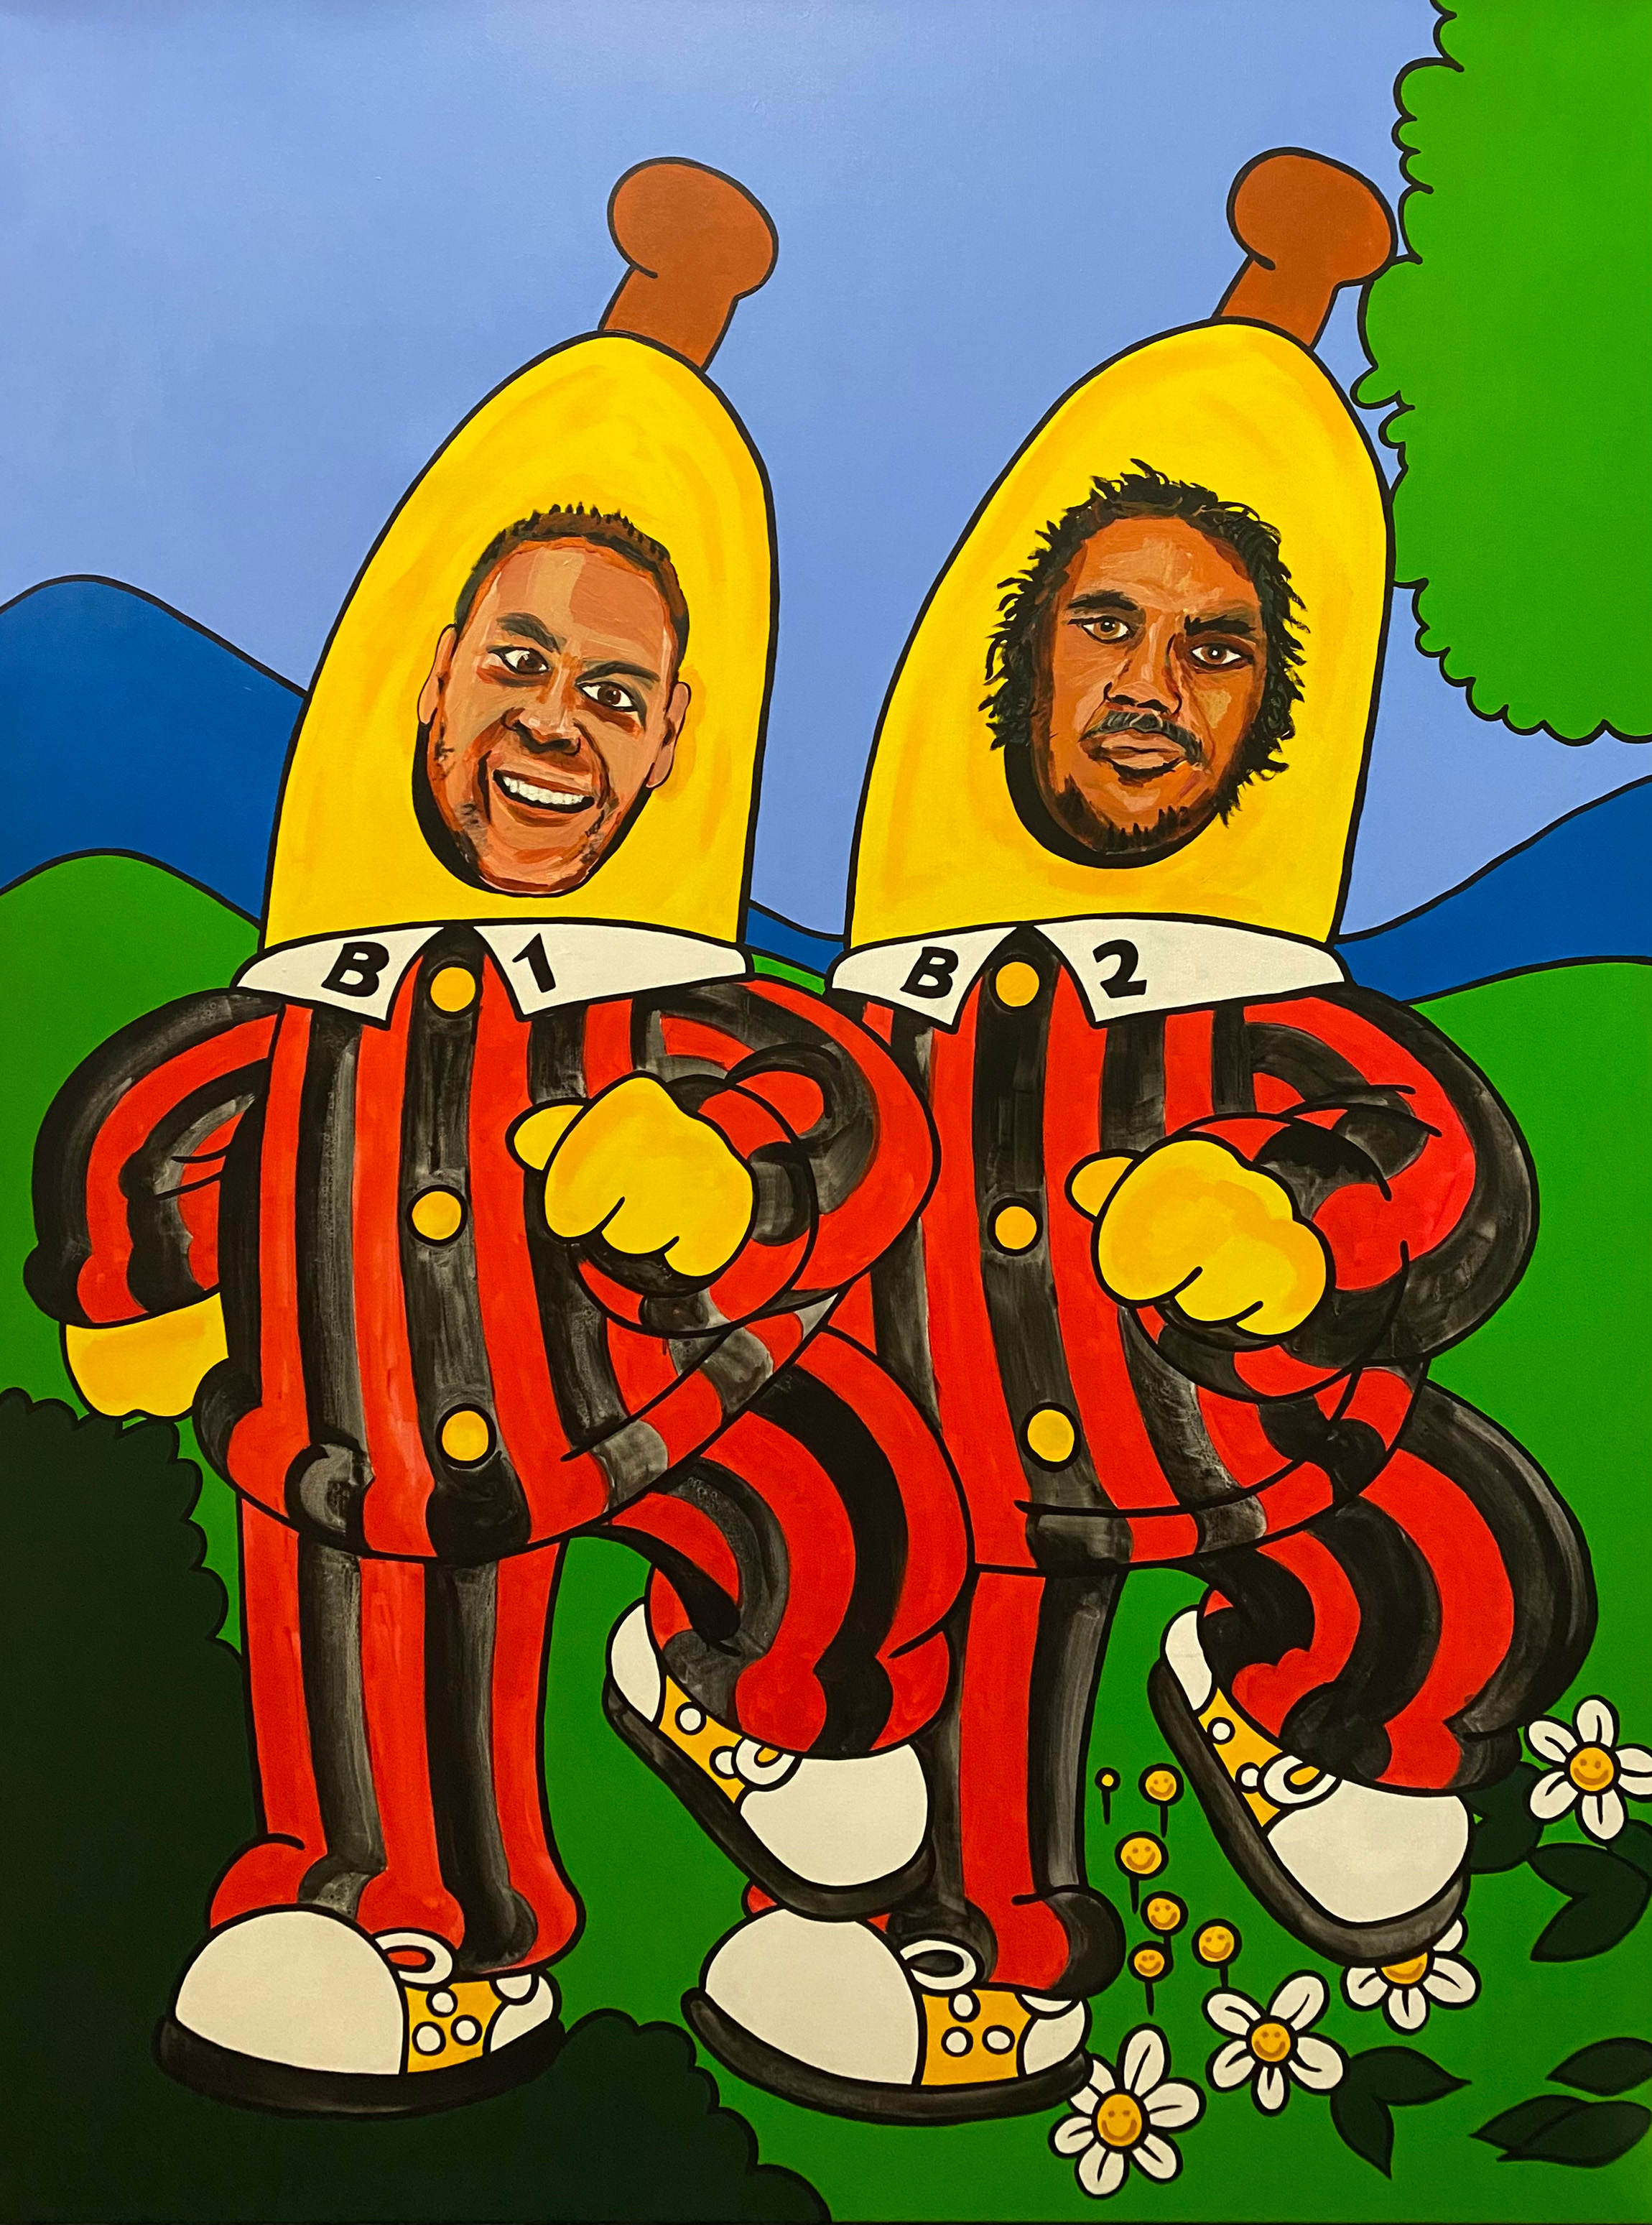 Ярка картина на двама австралийски аборигенски мъже, провиращи глави през парчета банан в реален размер в пижамите си.